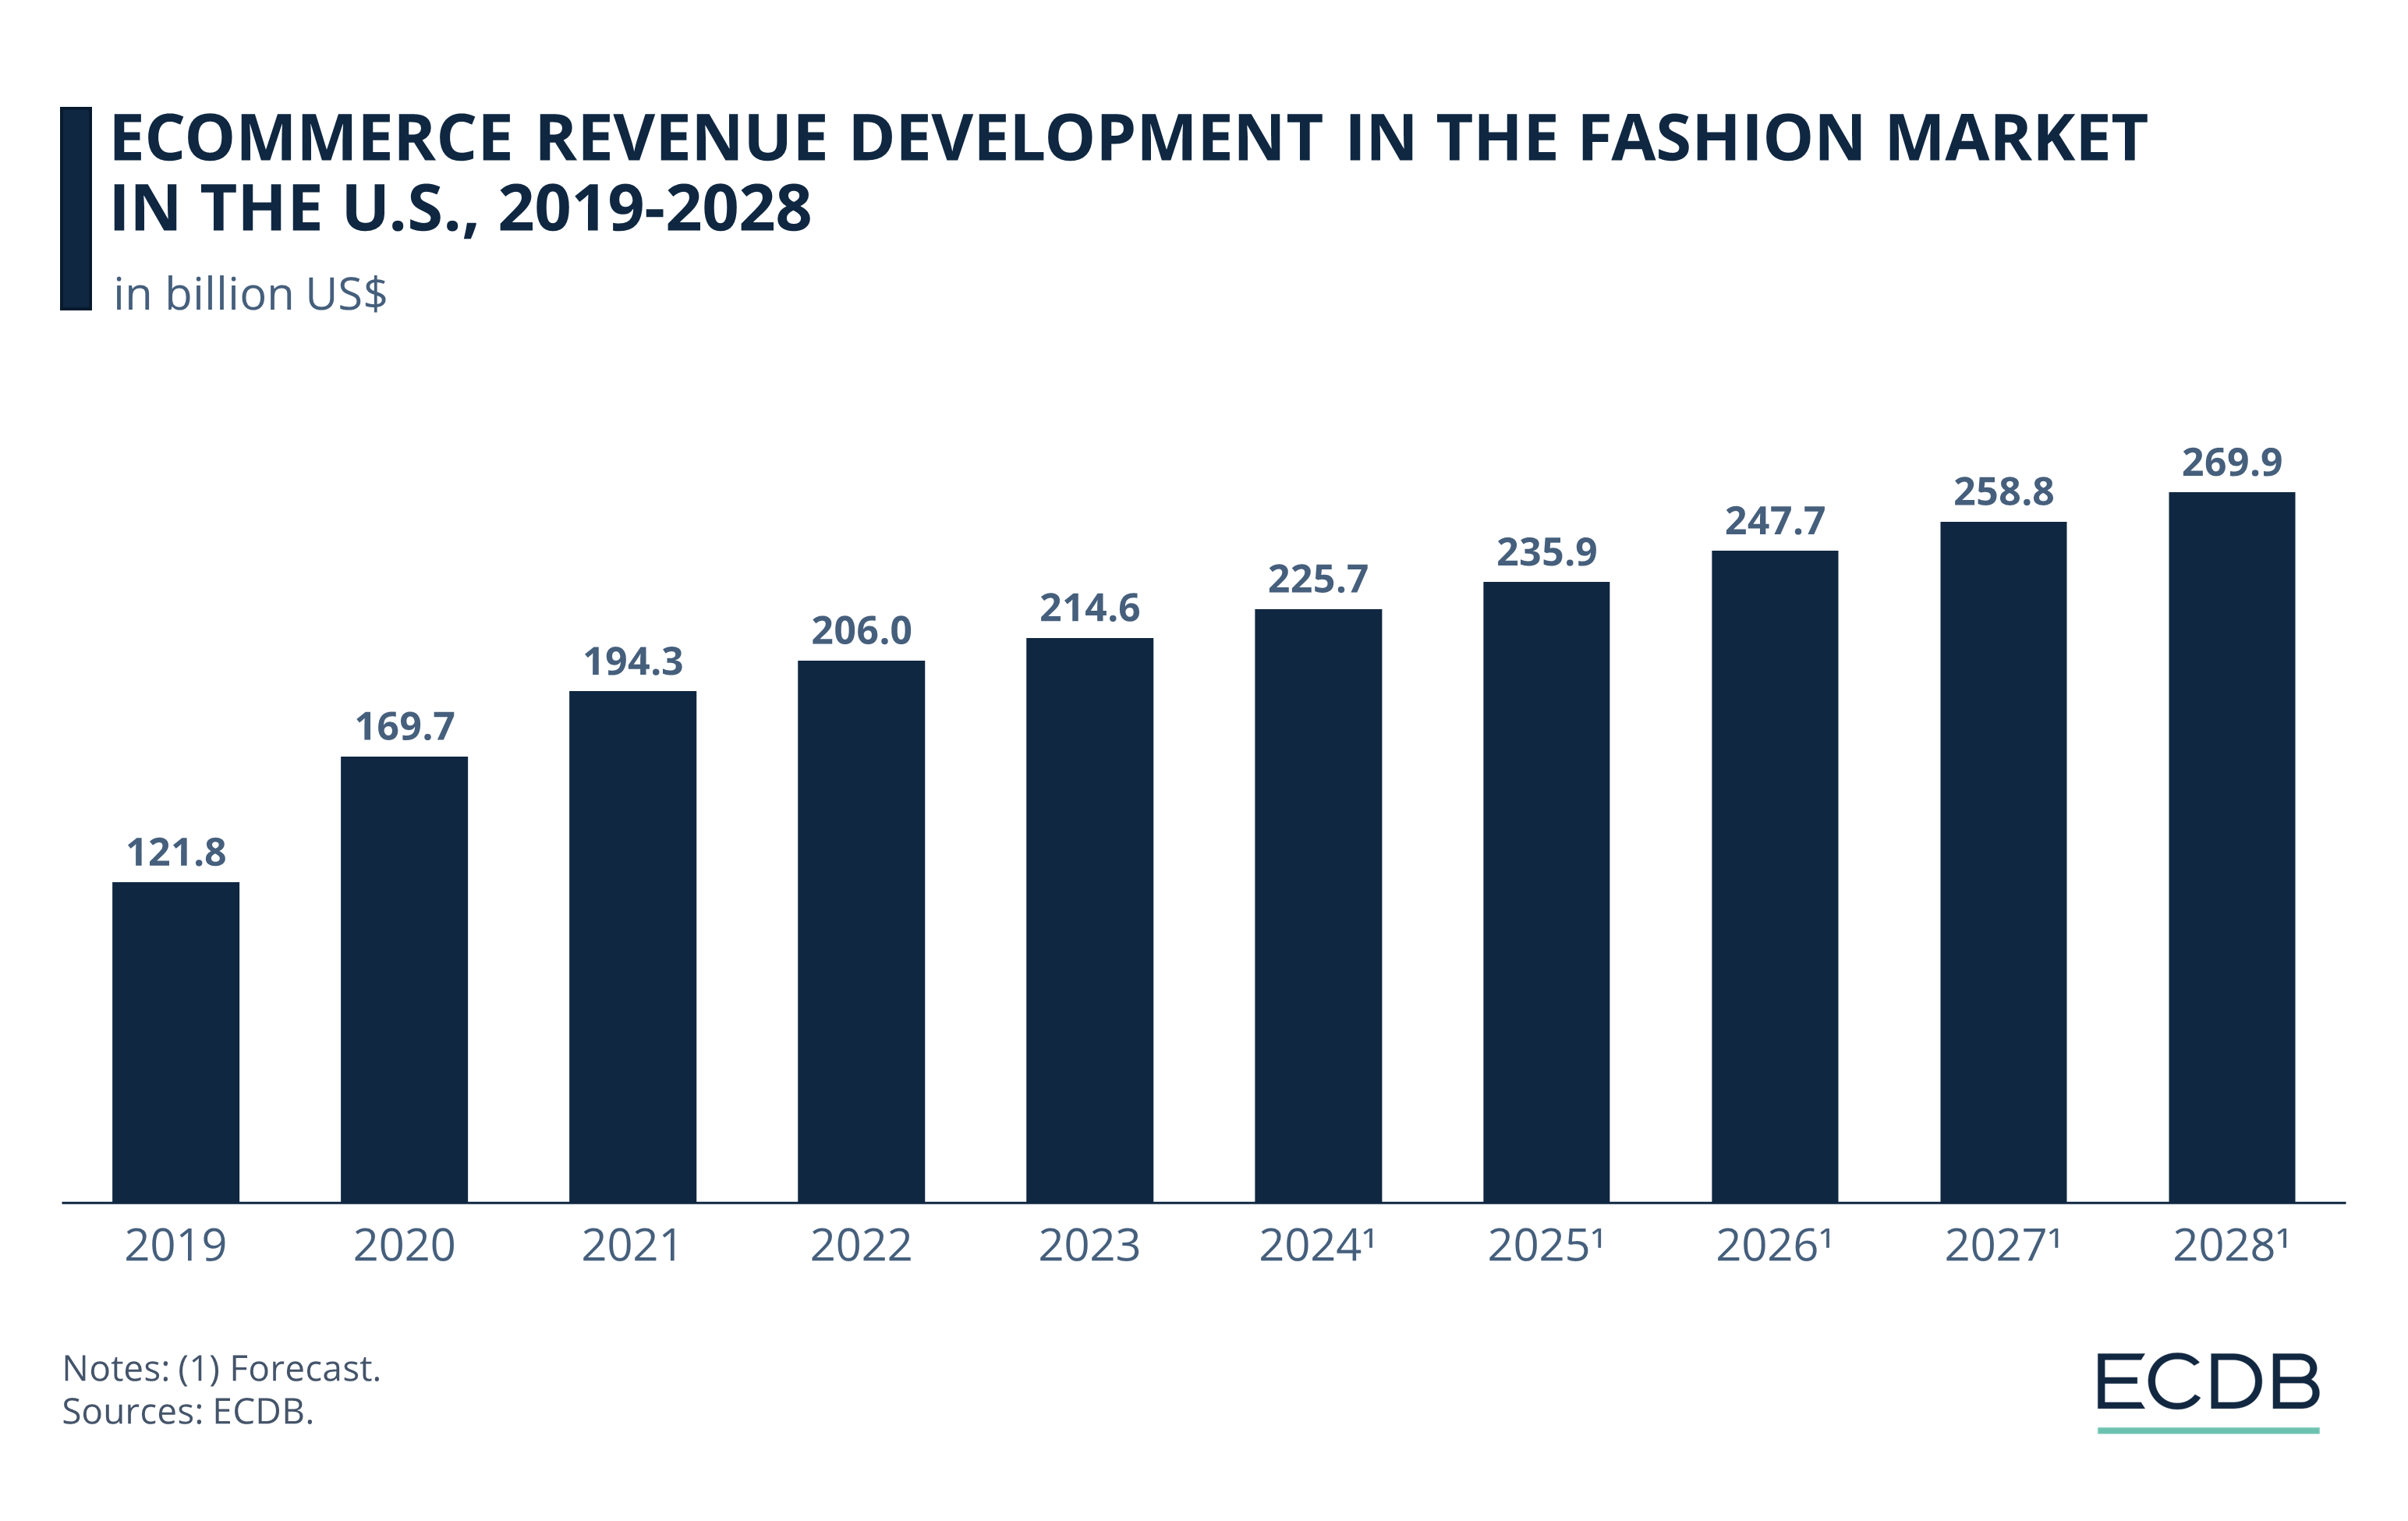 eCommerce Revenue Development in the U.S. Fashion Market, 2019-2027